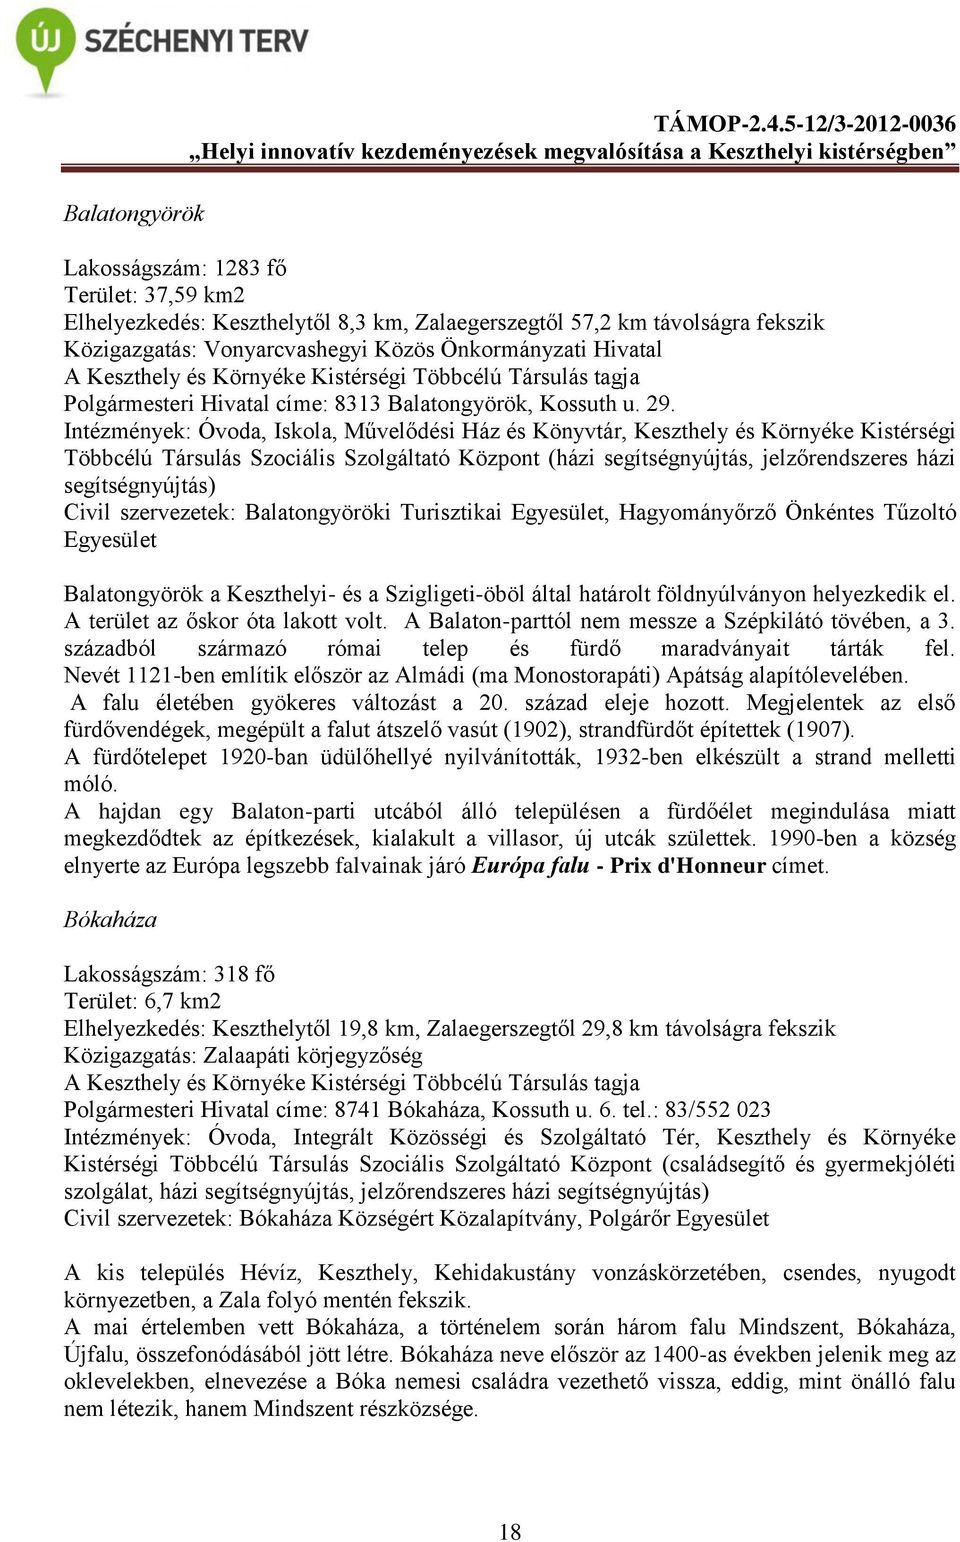 Keszthely és Környéke Kistérségi Többcélú Társulás tagja Polgármesteri Hivatal címe: 8313 Balatongyörök, Kossuth u. 29.